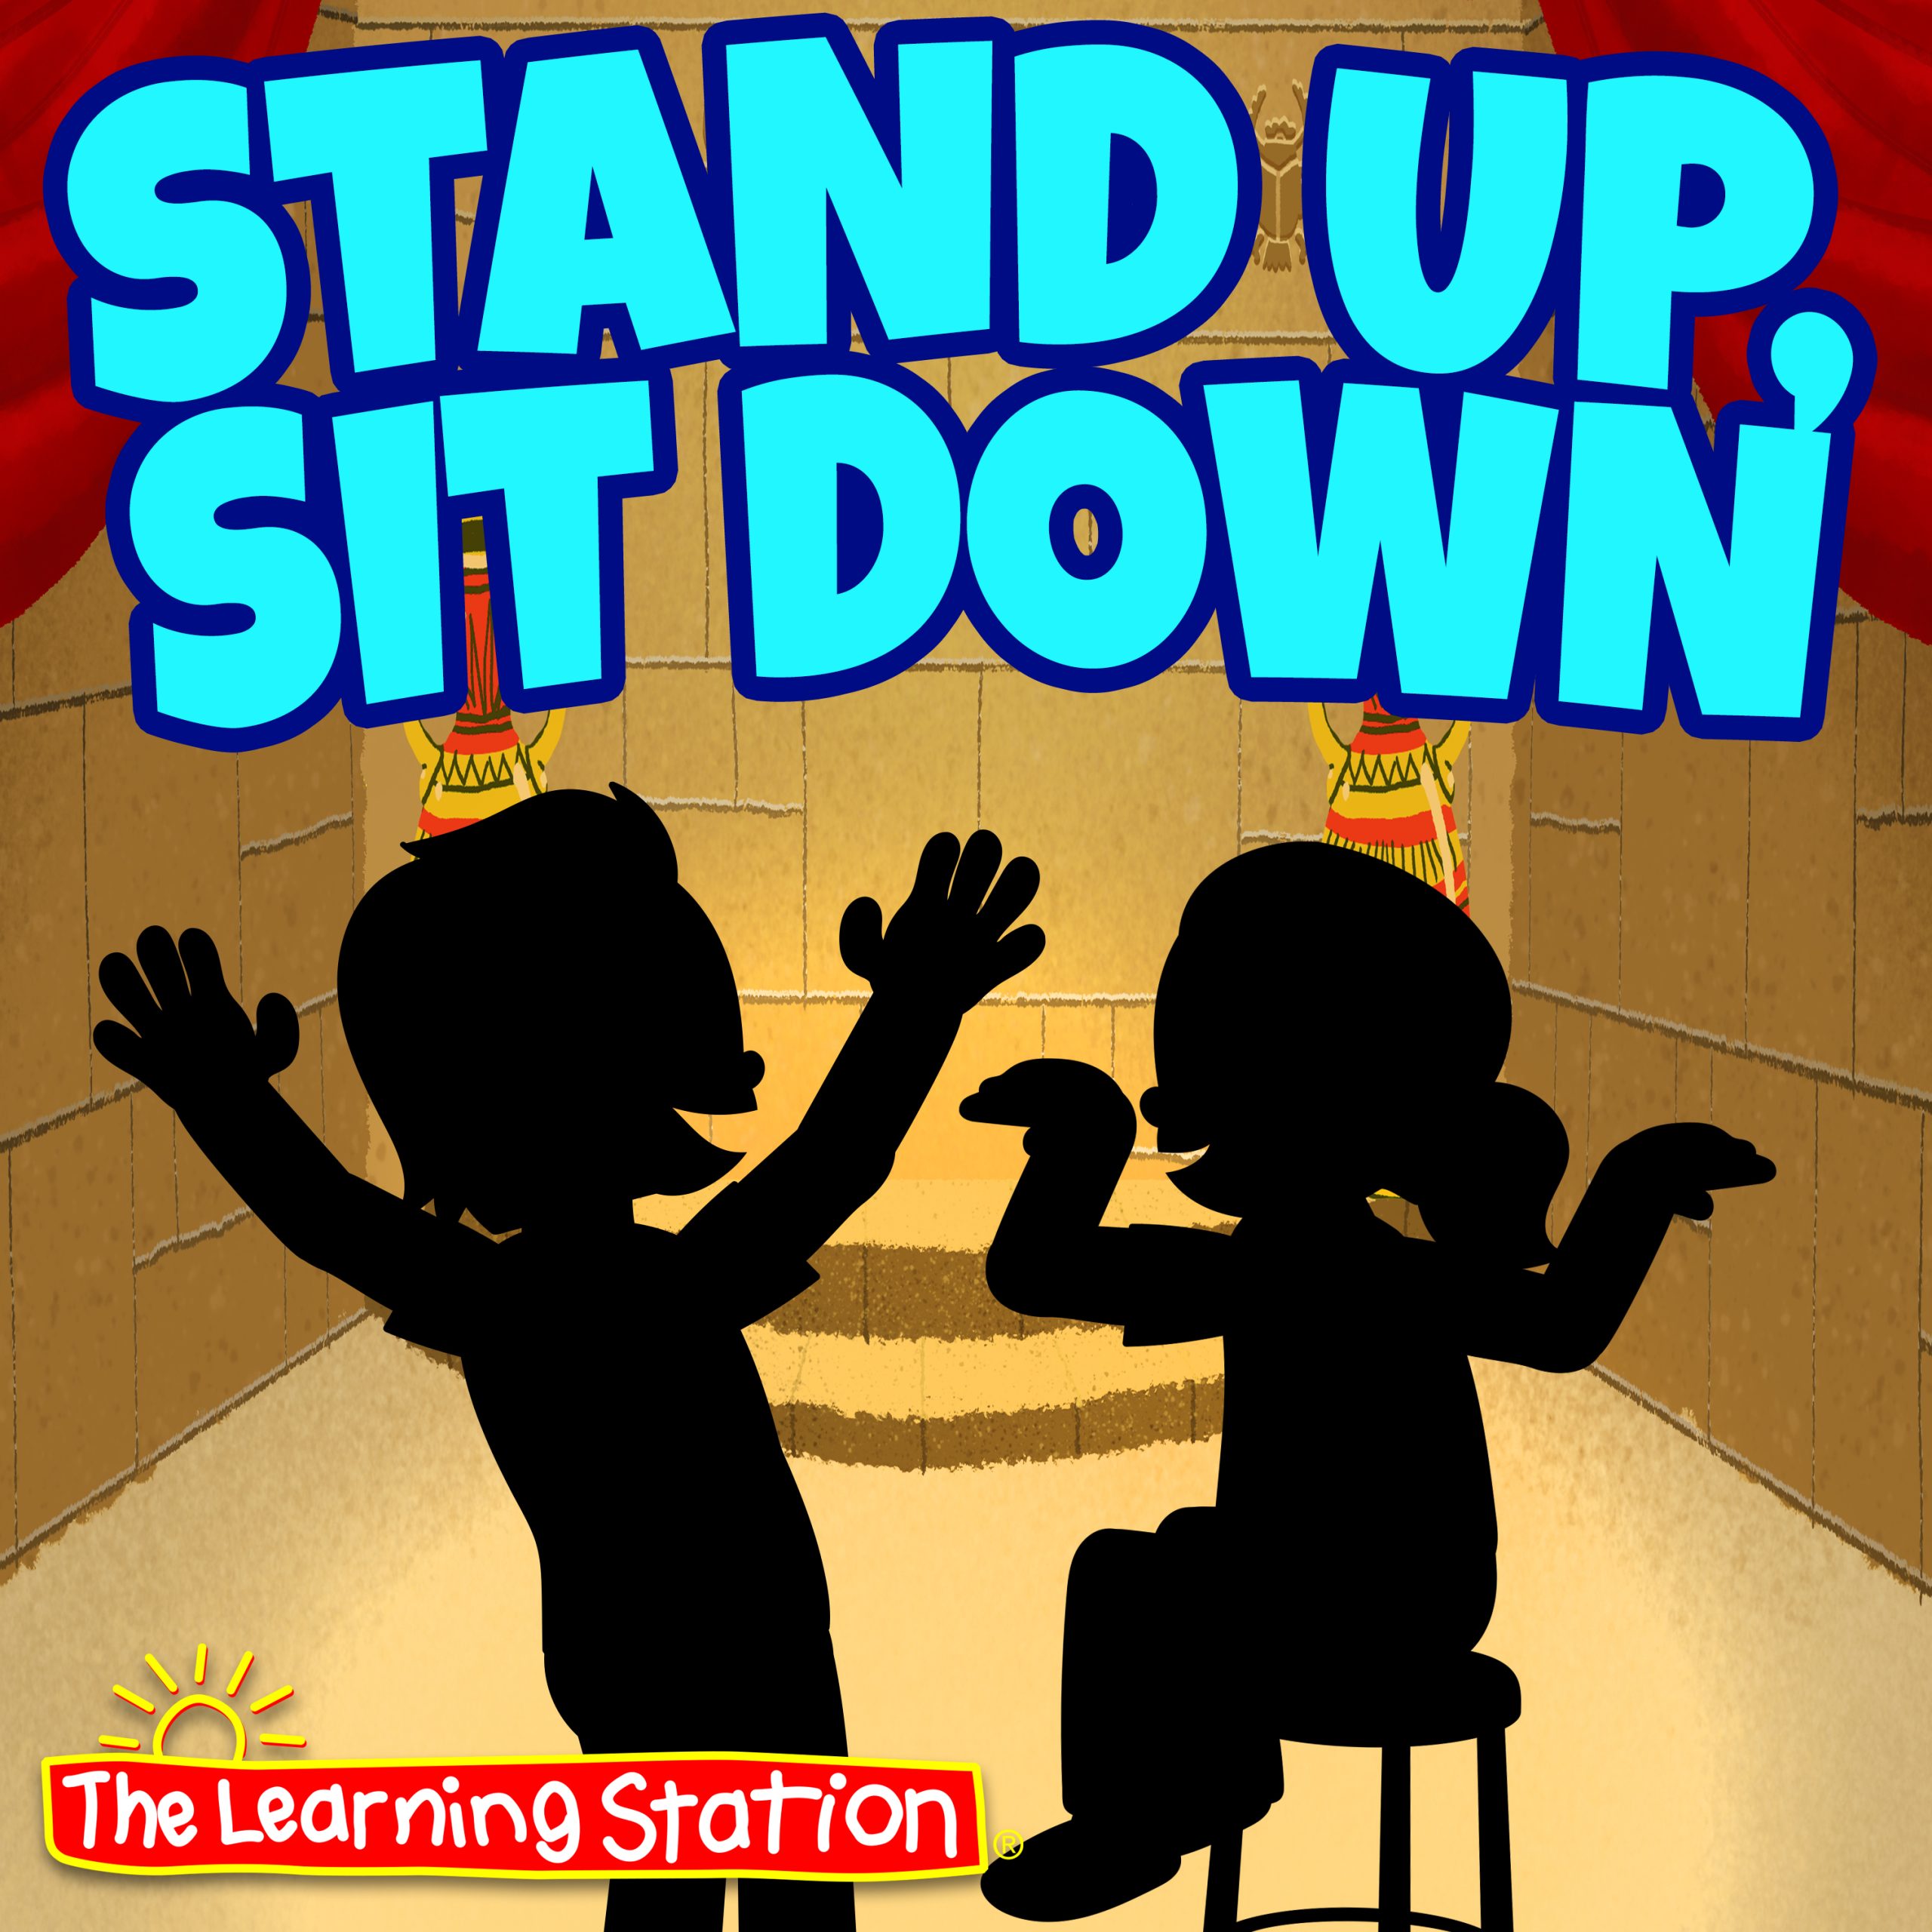 Stand up sit. Stand up sit down. Stand up sit down Song for Kids. Stand up Stand up sit down sit down turn around. Stand up sit down keep moving.